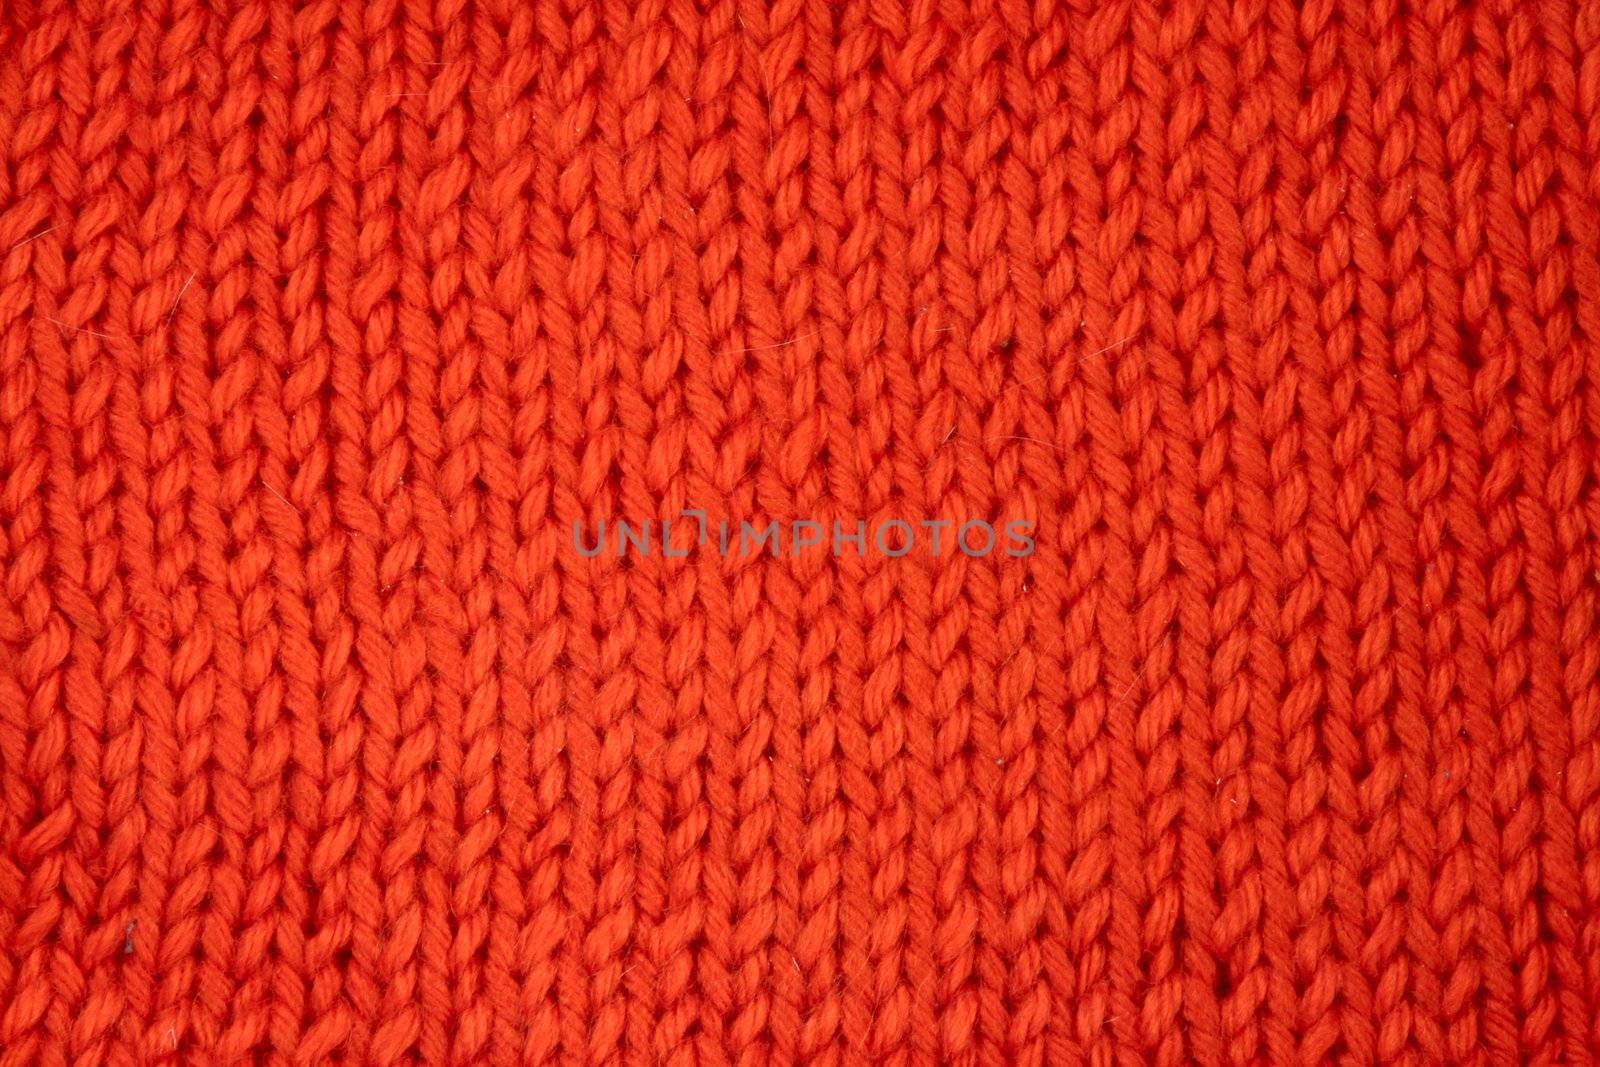 Wool knitted textured background by destillat